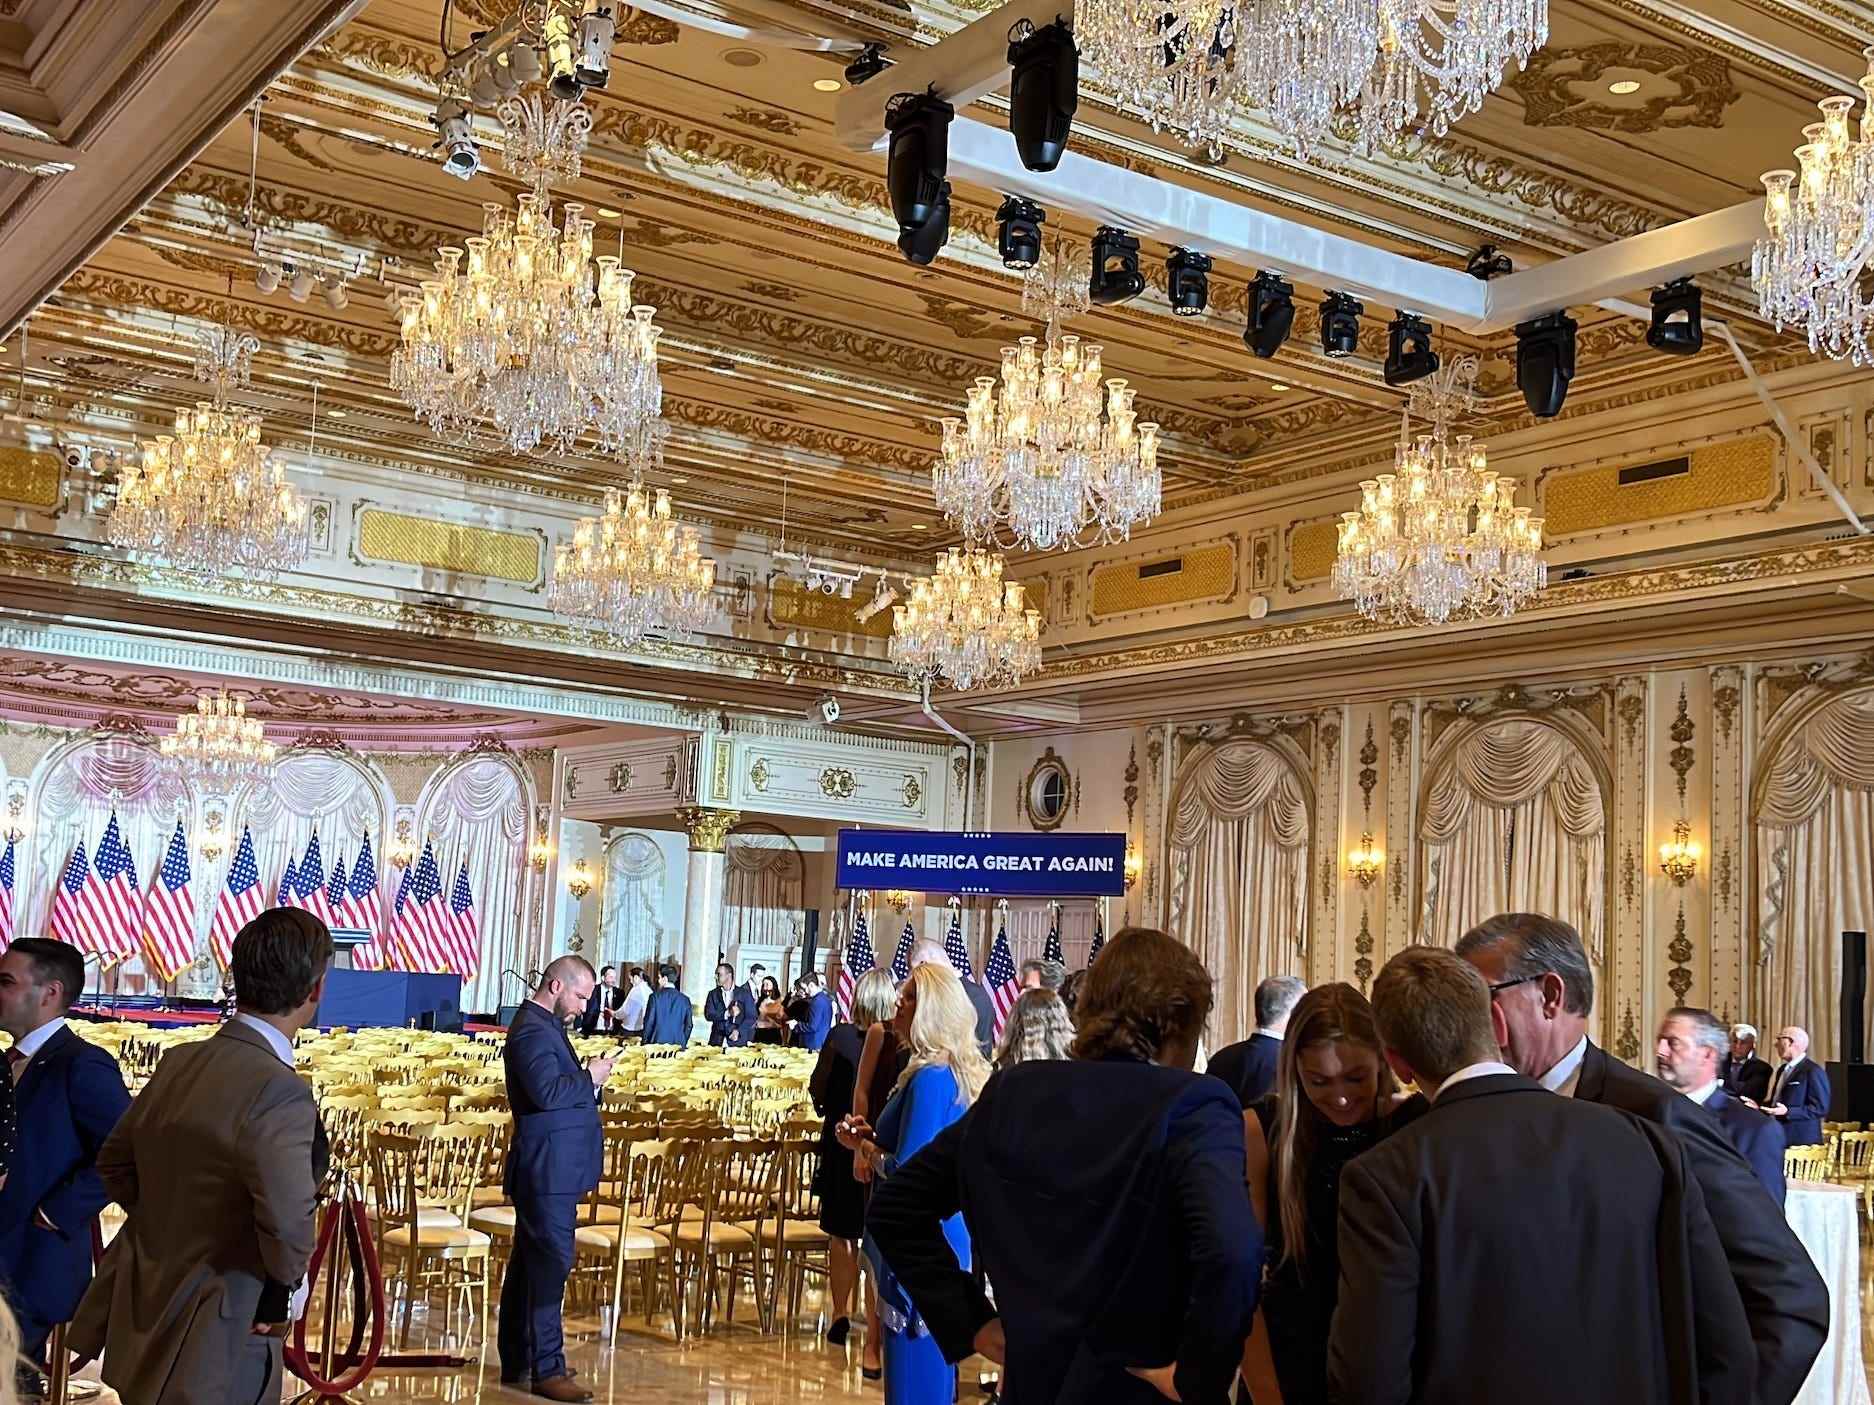 Die meisten Gäste gingen kurz nach Trumps Ankündigung.  Nach den Regeln des Geheimdienstes durften die Leute den Raum während der Rede nicht verlassen.